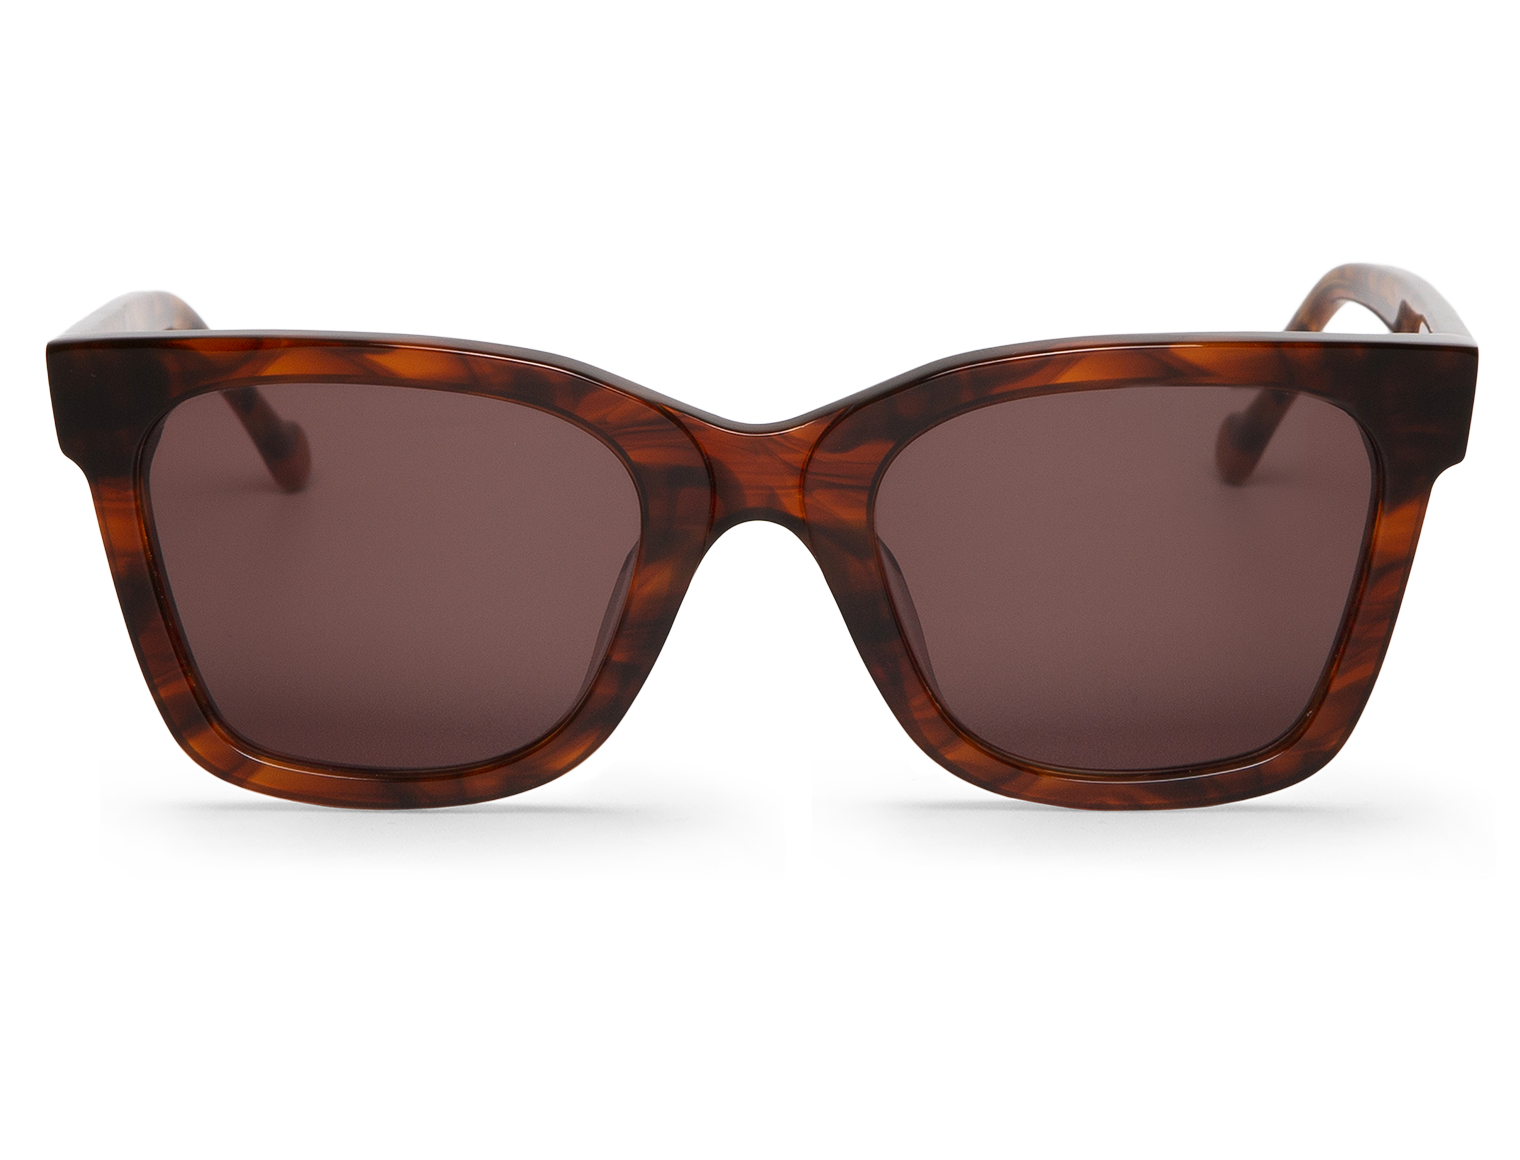 MR BOHO Smoke Gartner Sunglasses with Classical Lenses